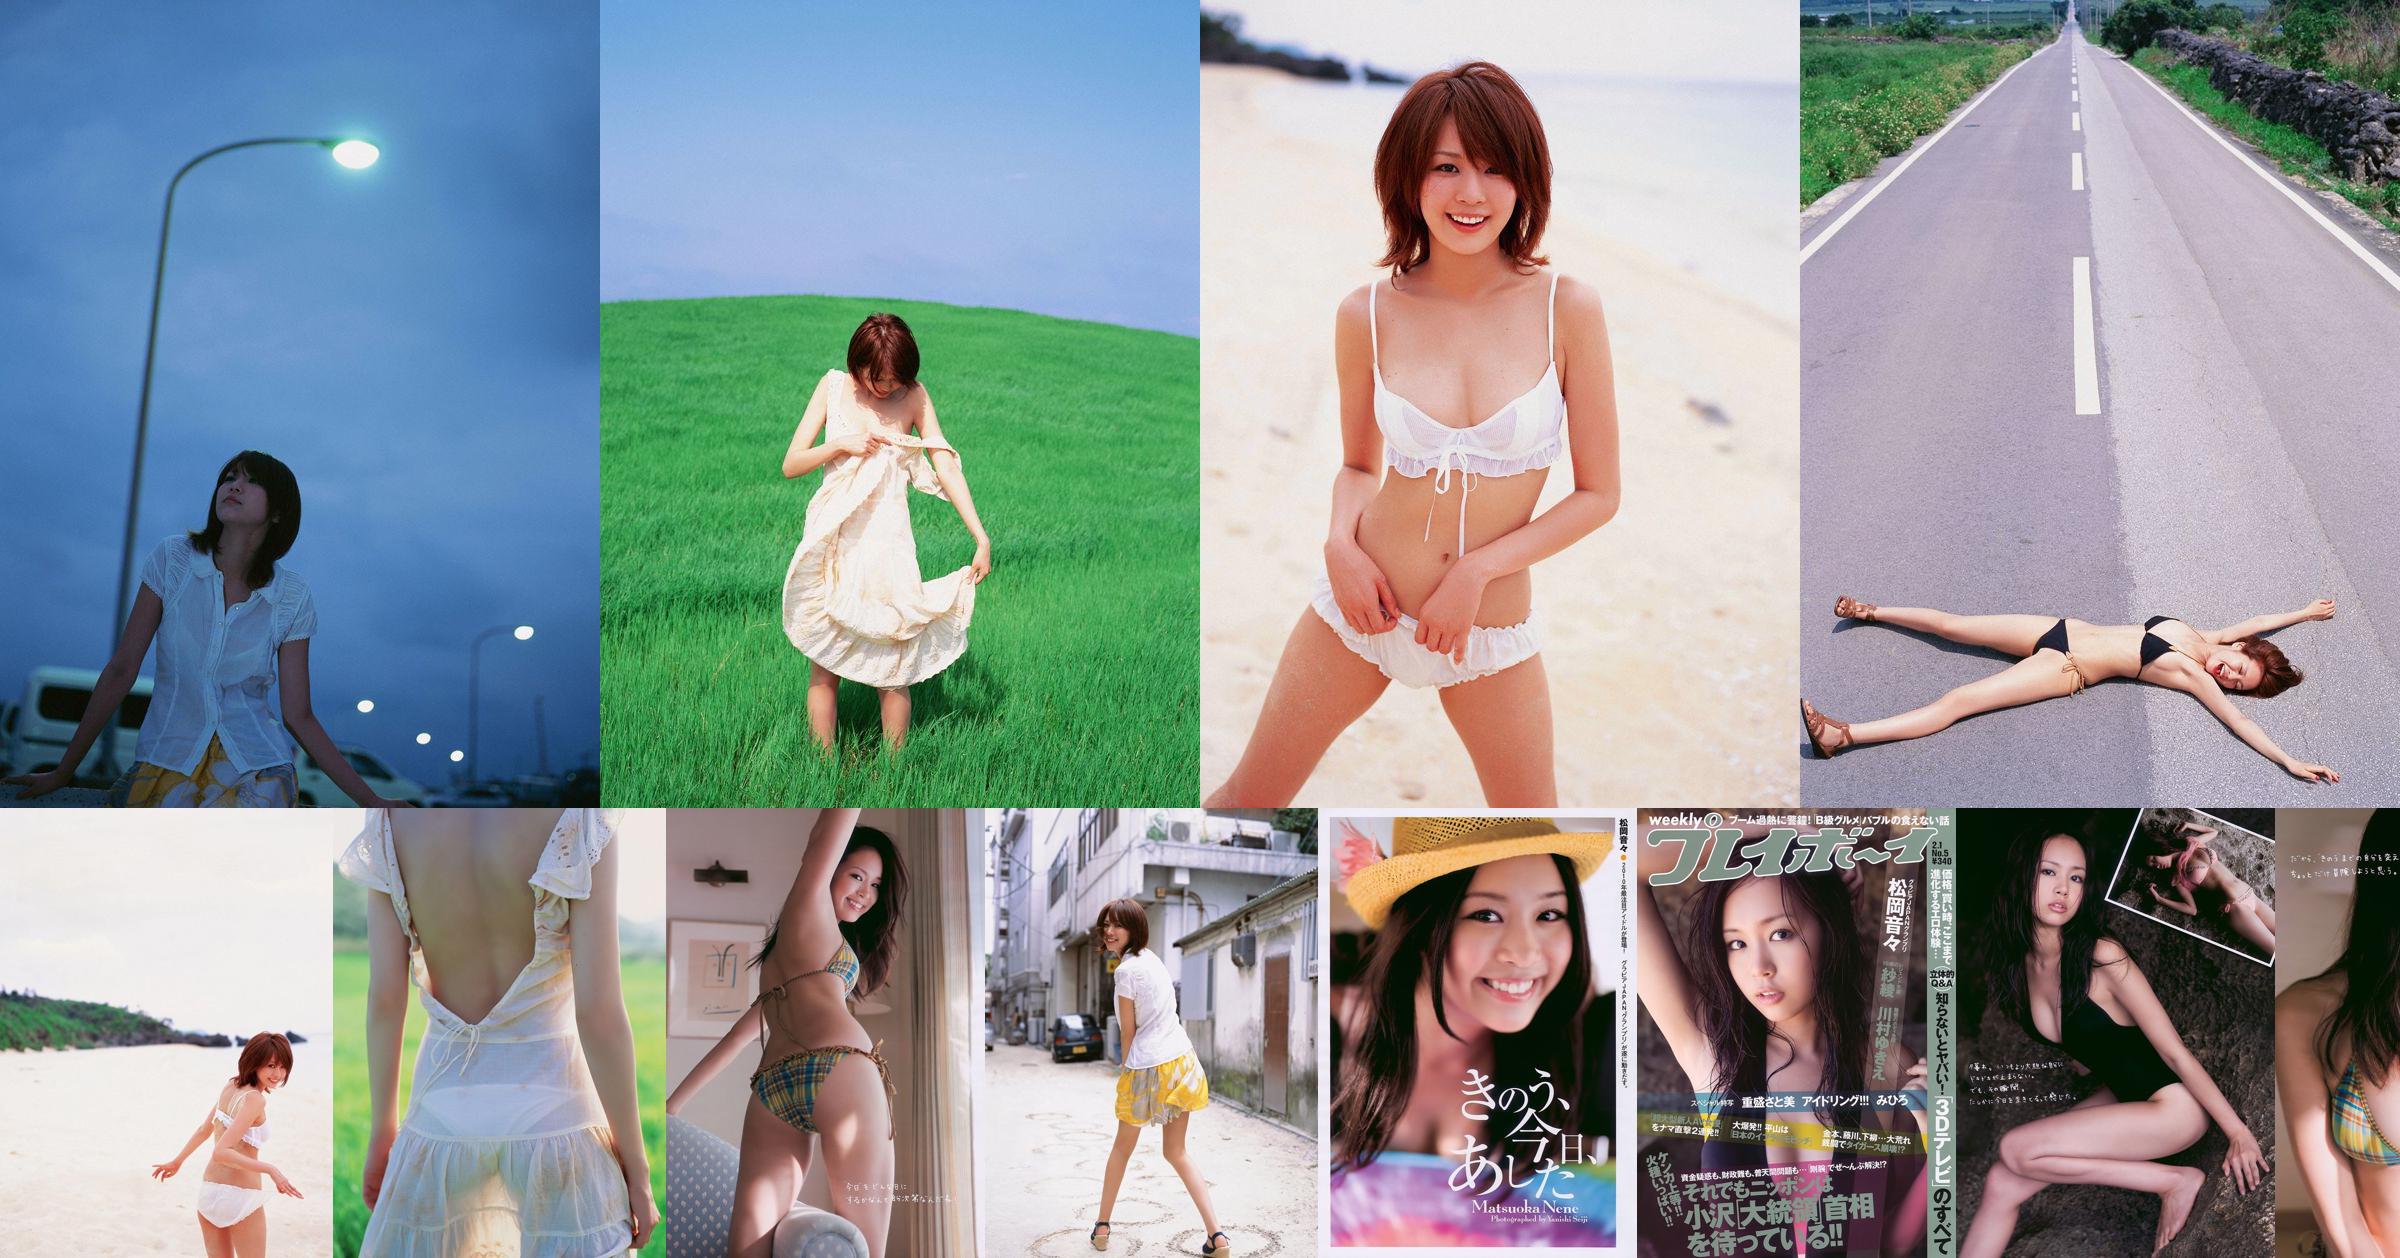 Nene Matsuoka Saaya Kawamura Yukie Shigemori Satomi Shigemori [Playboy settimanale] 2010 No.05 Foto Mori No.f9b45c Pagina 8